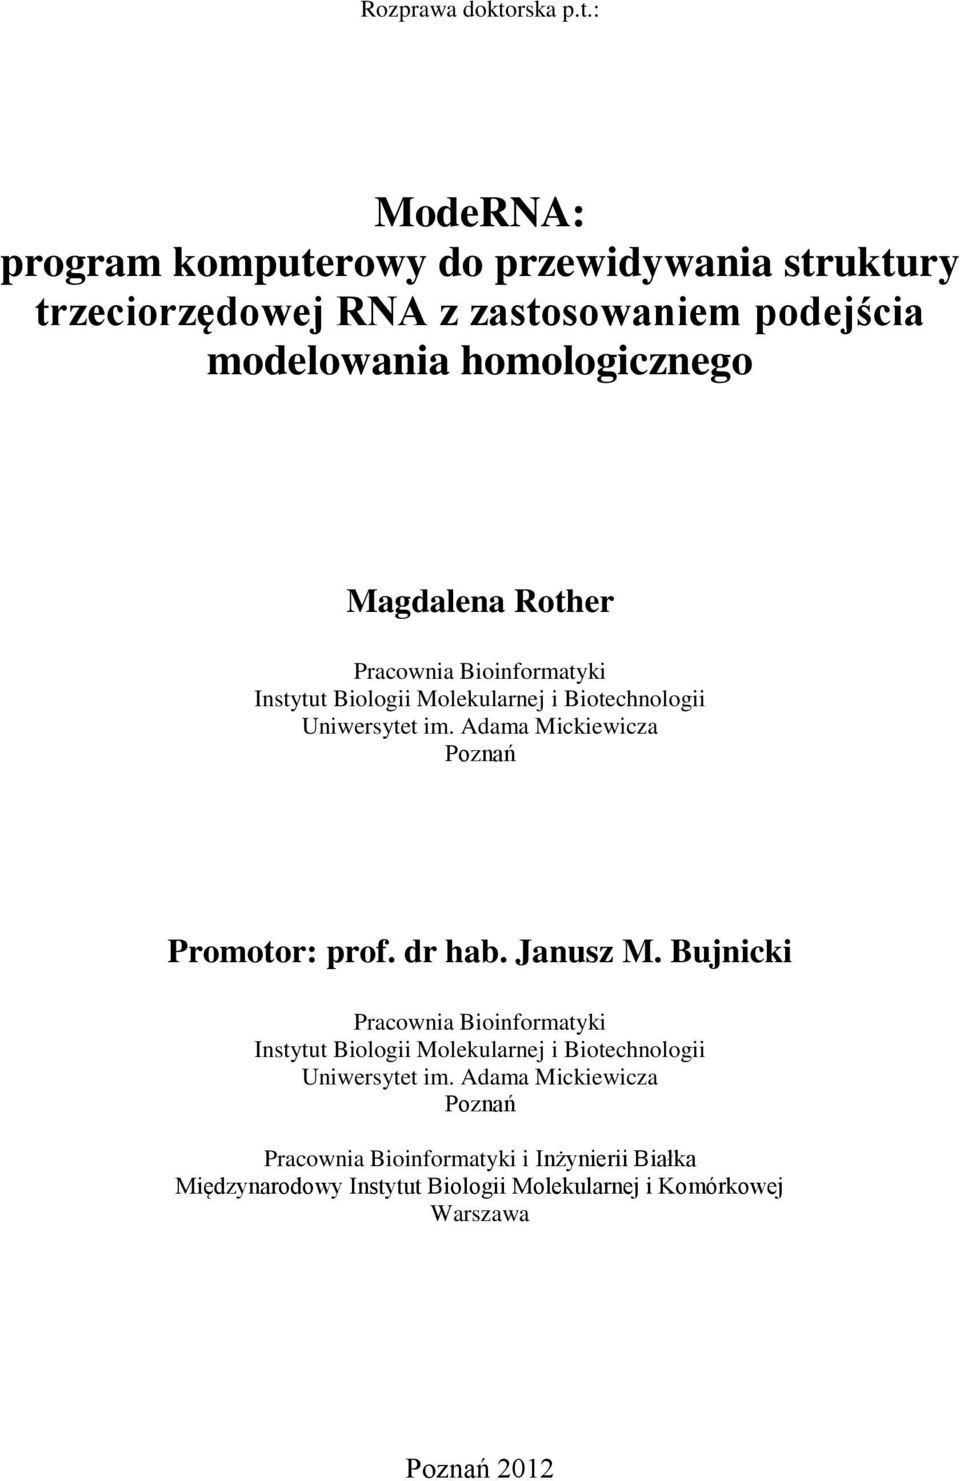 : ModeRNA: program komputerowy do przewidywania struktury trzeciorzędowej RNA z zastosowaniem podejścia modelowania homologicznego Magdalena